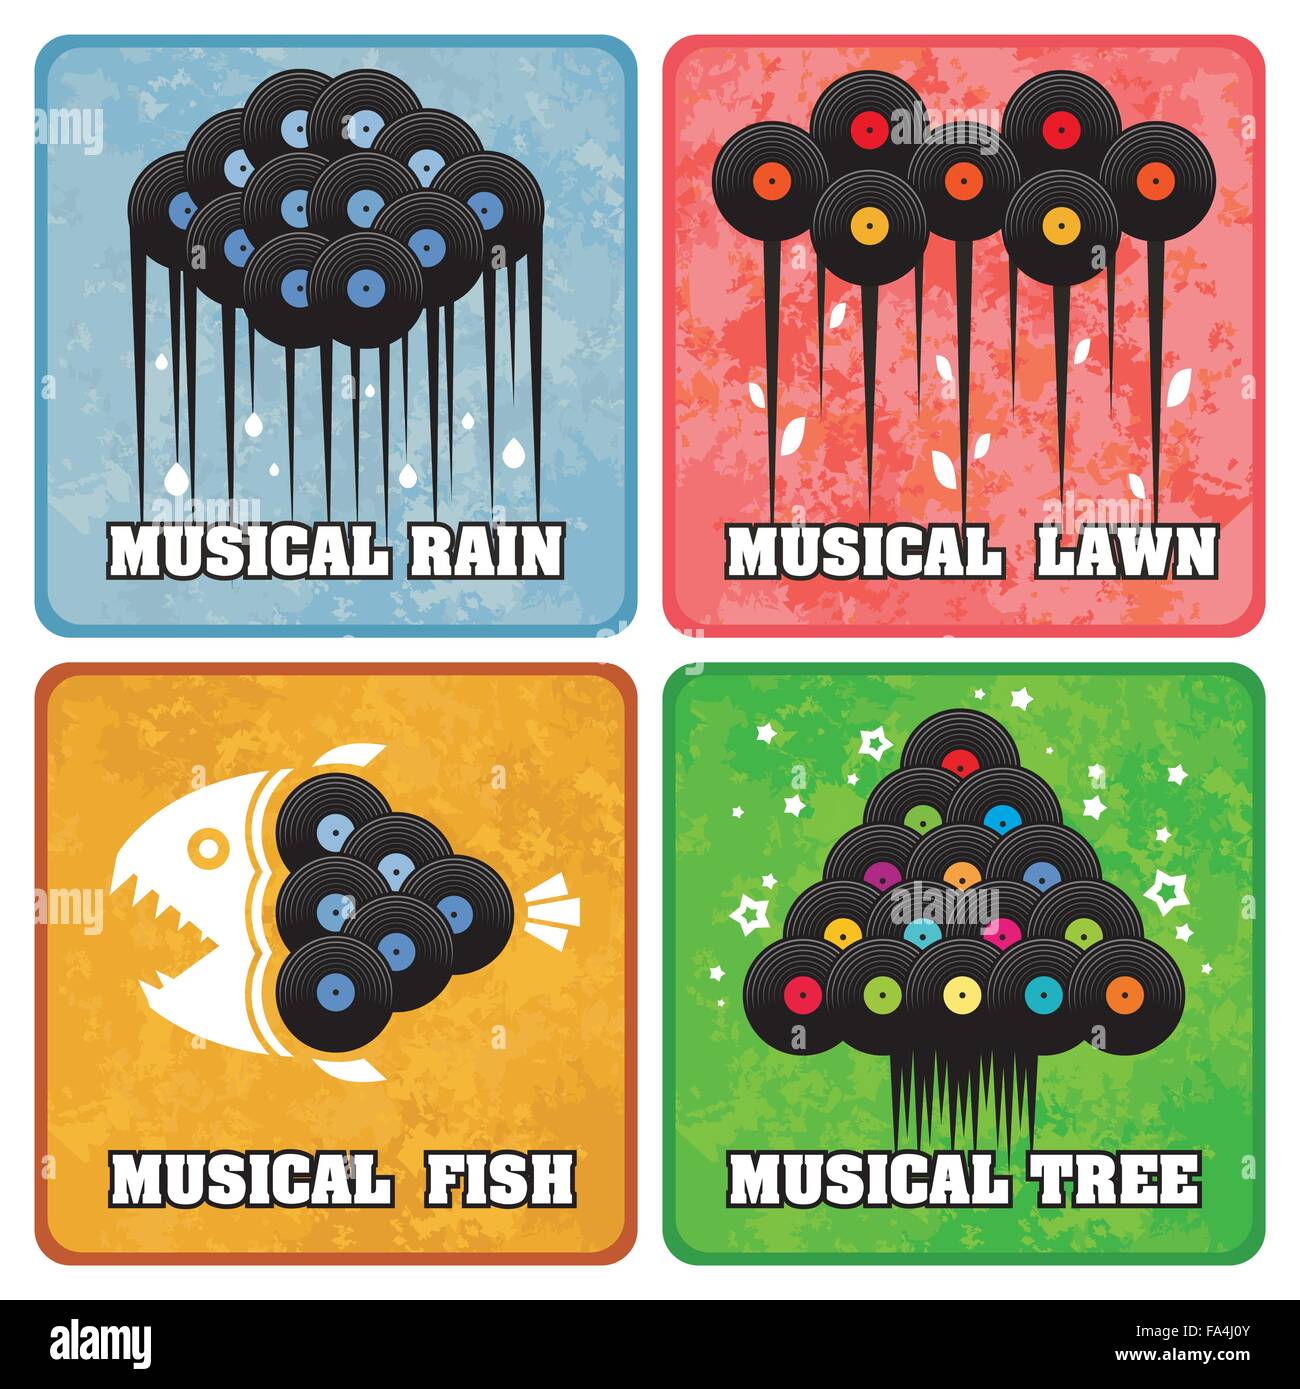 Konzeptionelle Reihe von kreativen LP Vinyl Icons mit Zeichen; Vektor-Illustration der musikalischen Regen, Rasen, Fisch und Baum aus Vinyl rec Stock Vektor